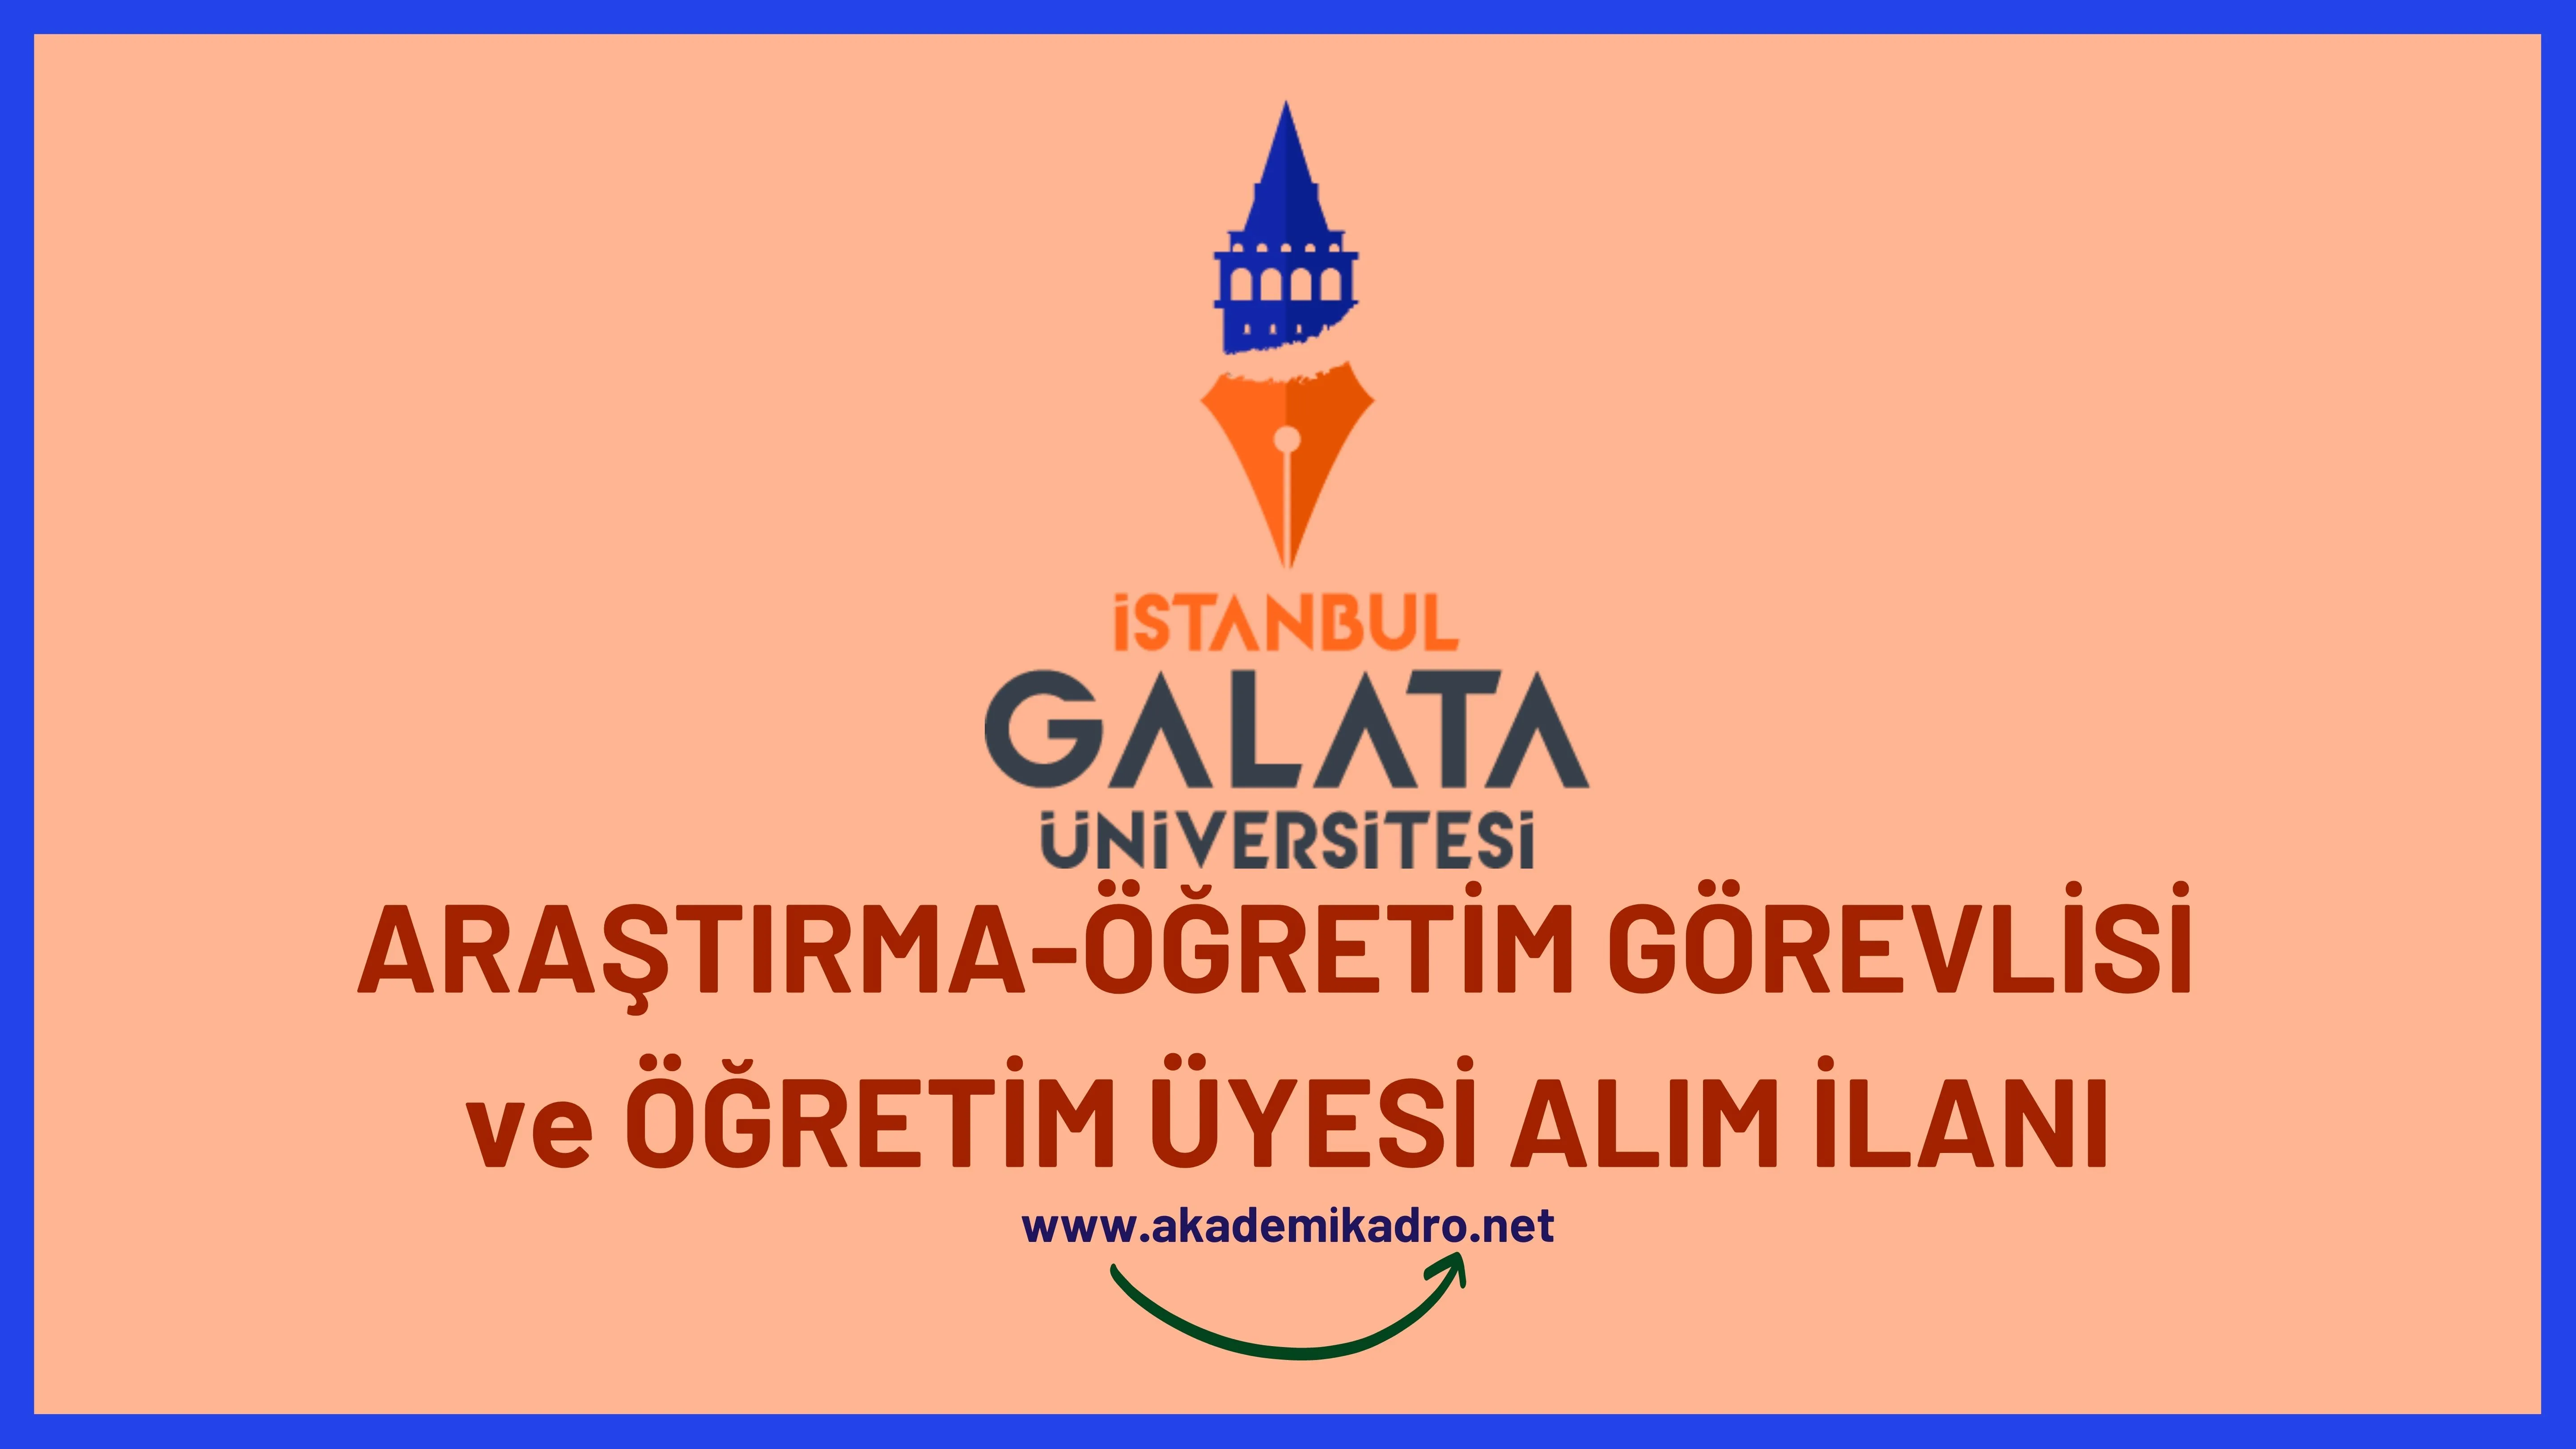 İstanbul Galata Üniversitesi 9 Araştırma görevlisi, 4 Öğretim görevlisi ve 43 Öğretim üyesi alacak.